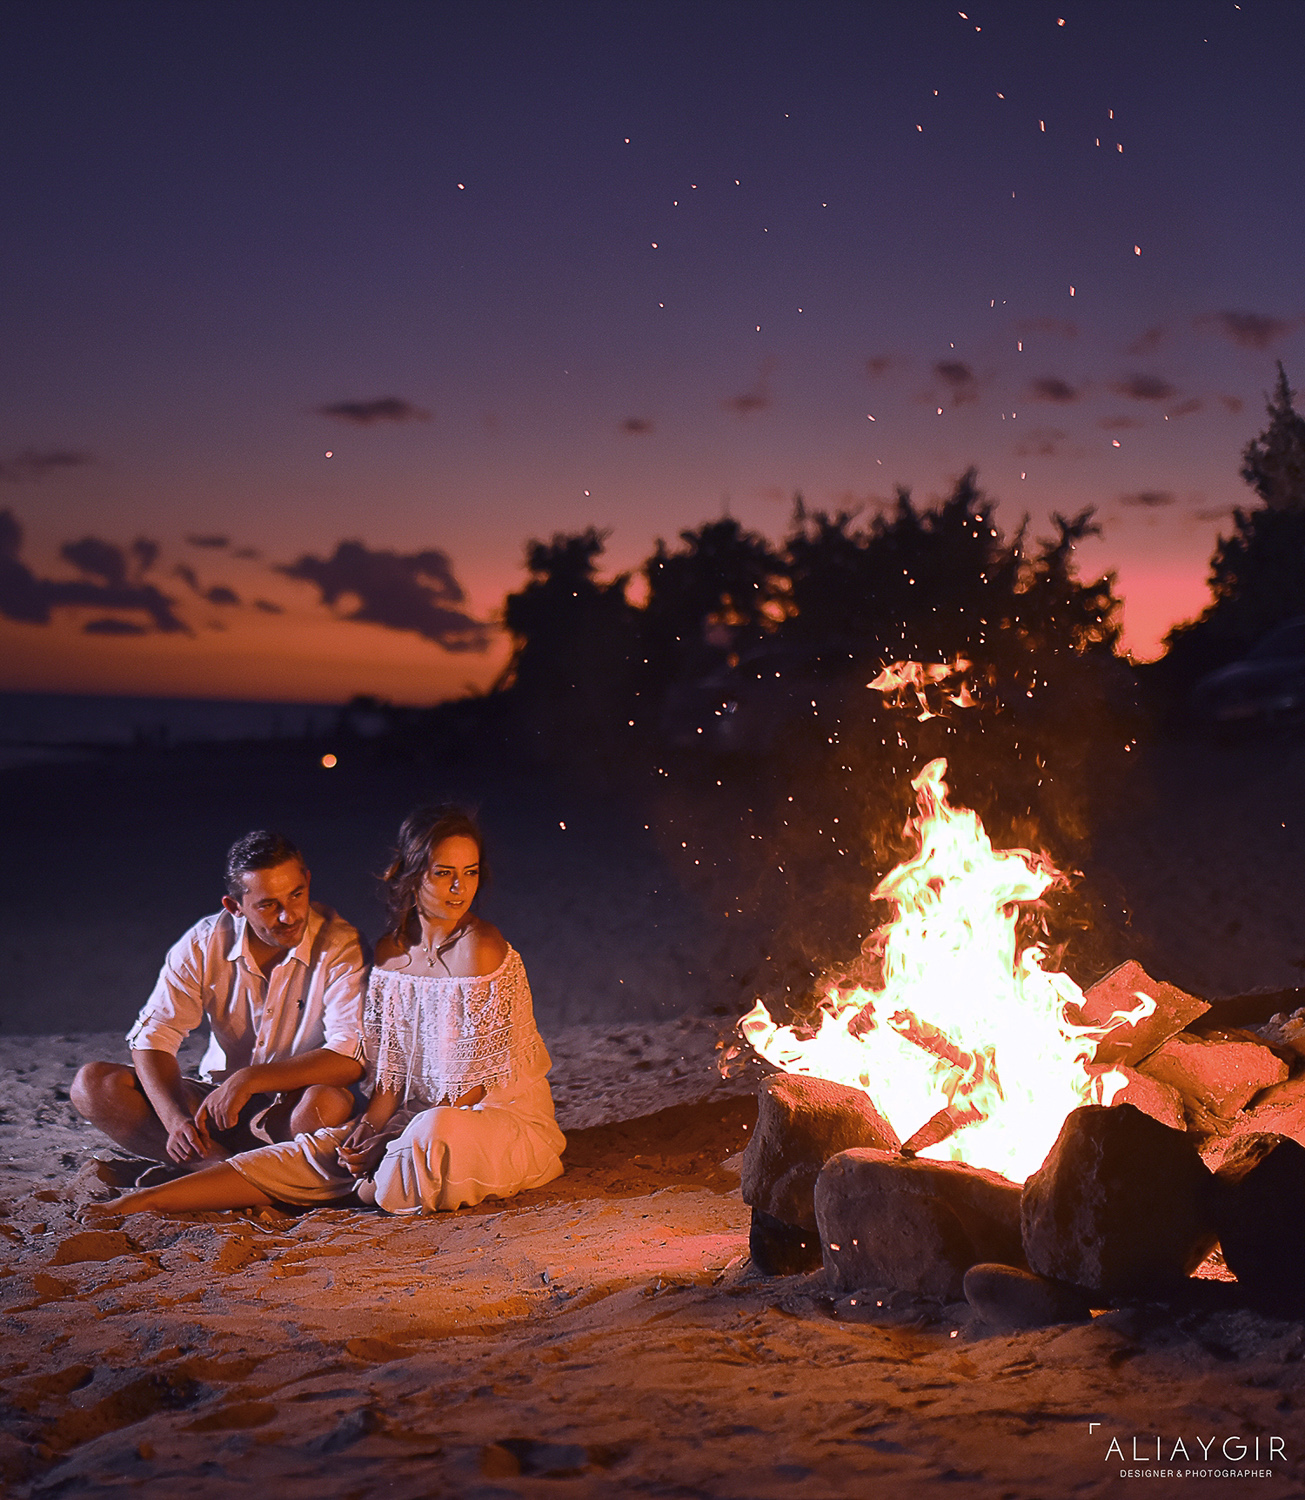 Delikli koy Sahil Fotoğrafı, Gece Sahil Çekimi, Düğün fotoğrafı, Ateş başında gece çekilmiş pozlar